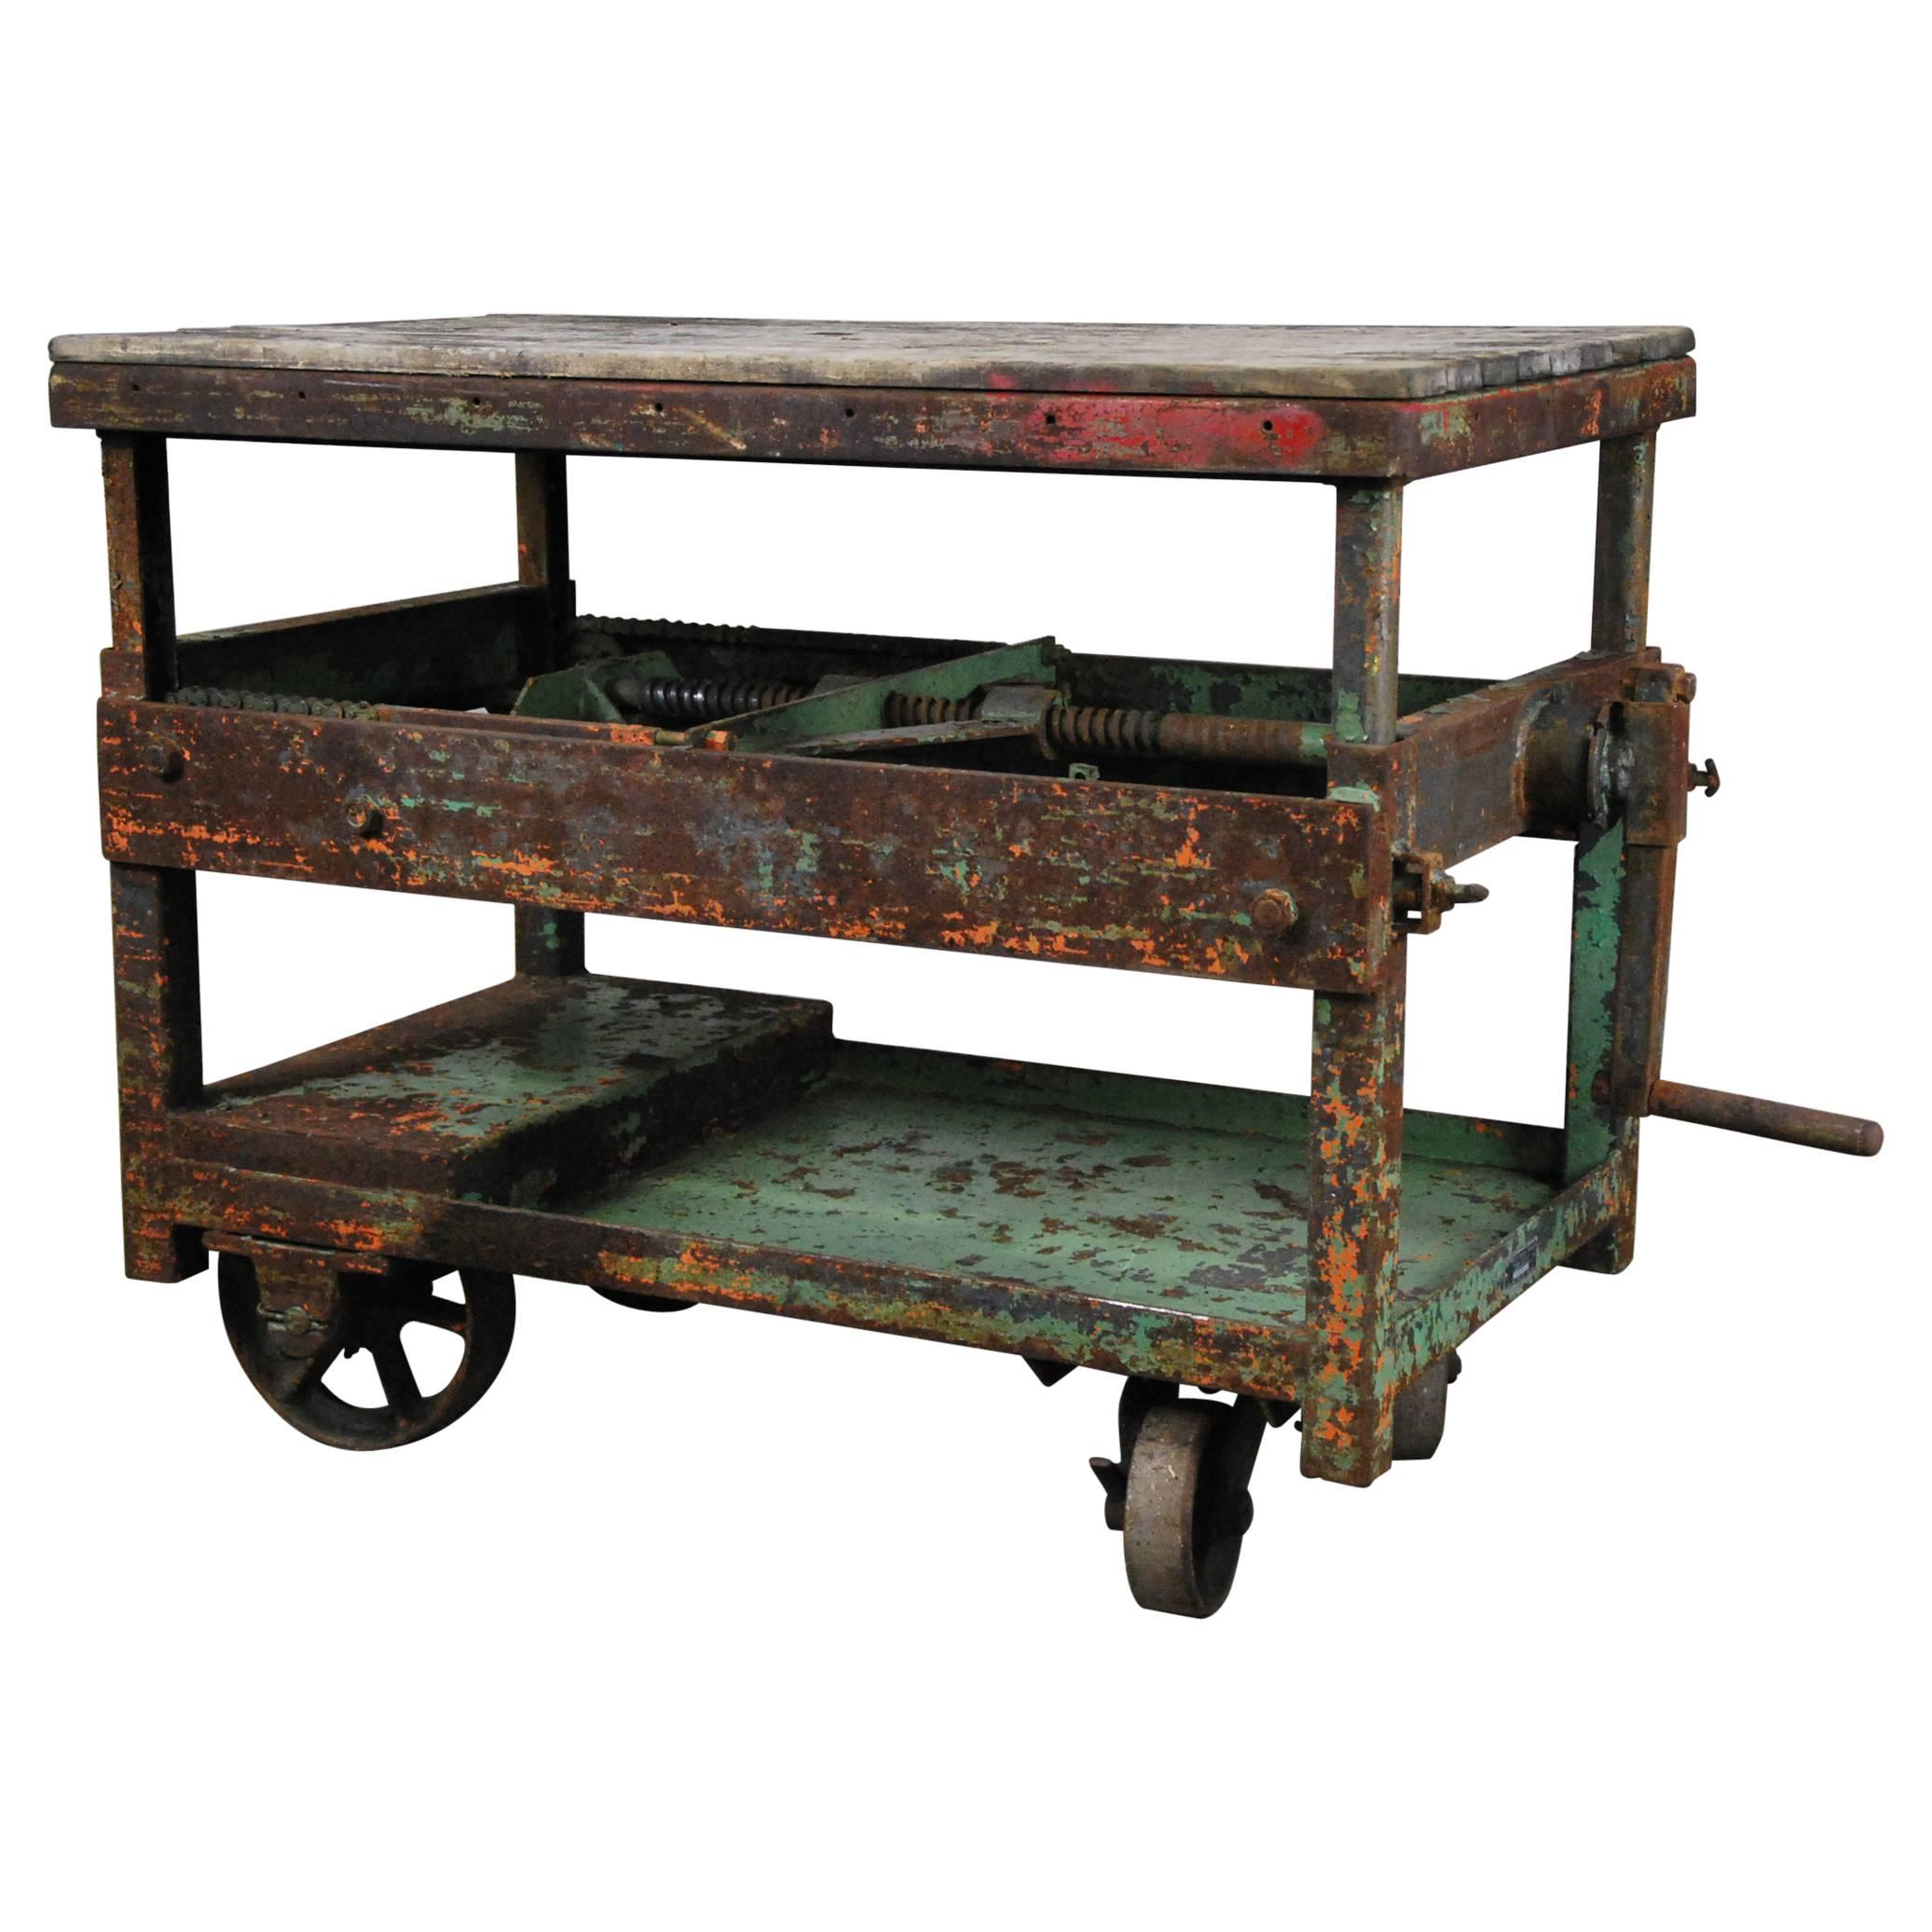 1920 Adjustable Industrial Crank Carts